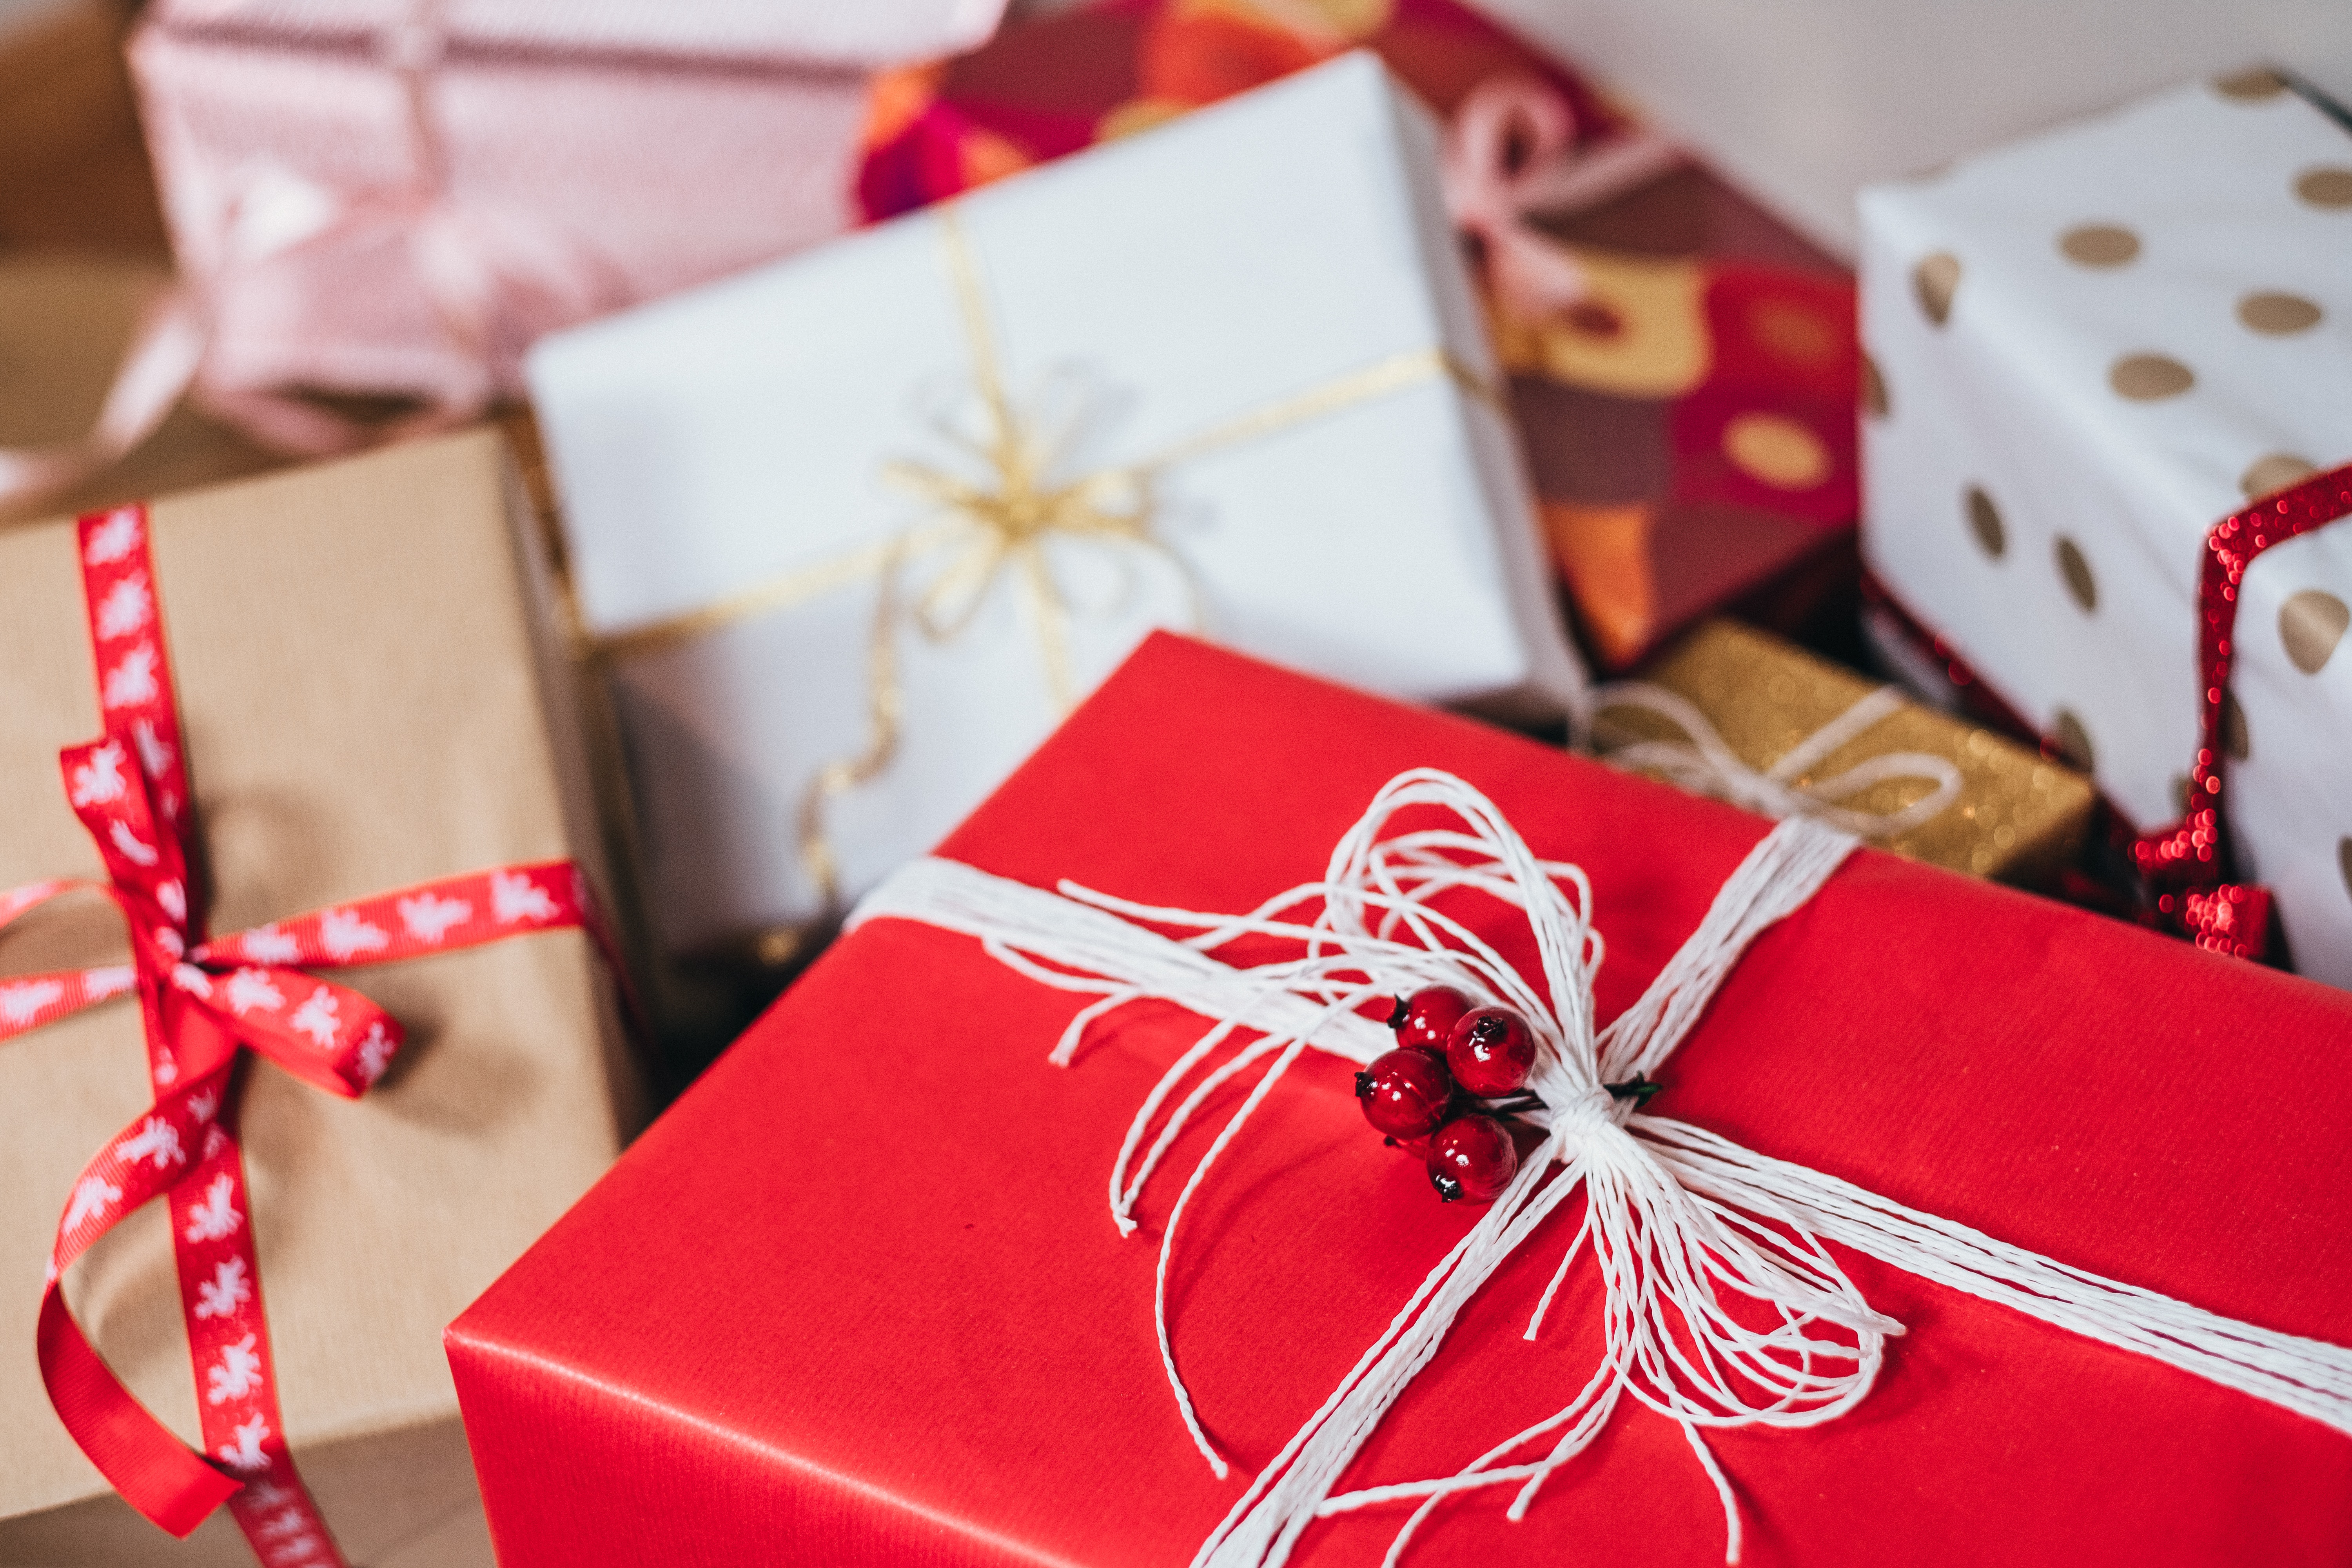 Cadeaus, Sinterklaas, Kerstmis